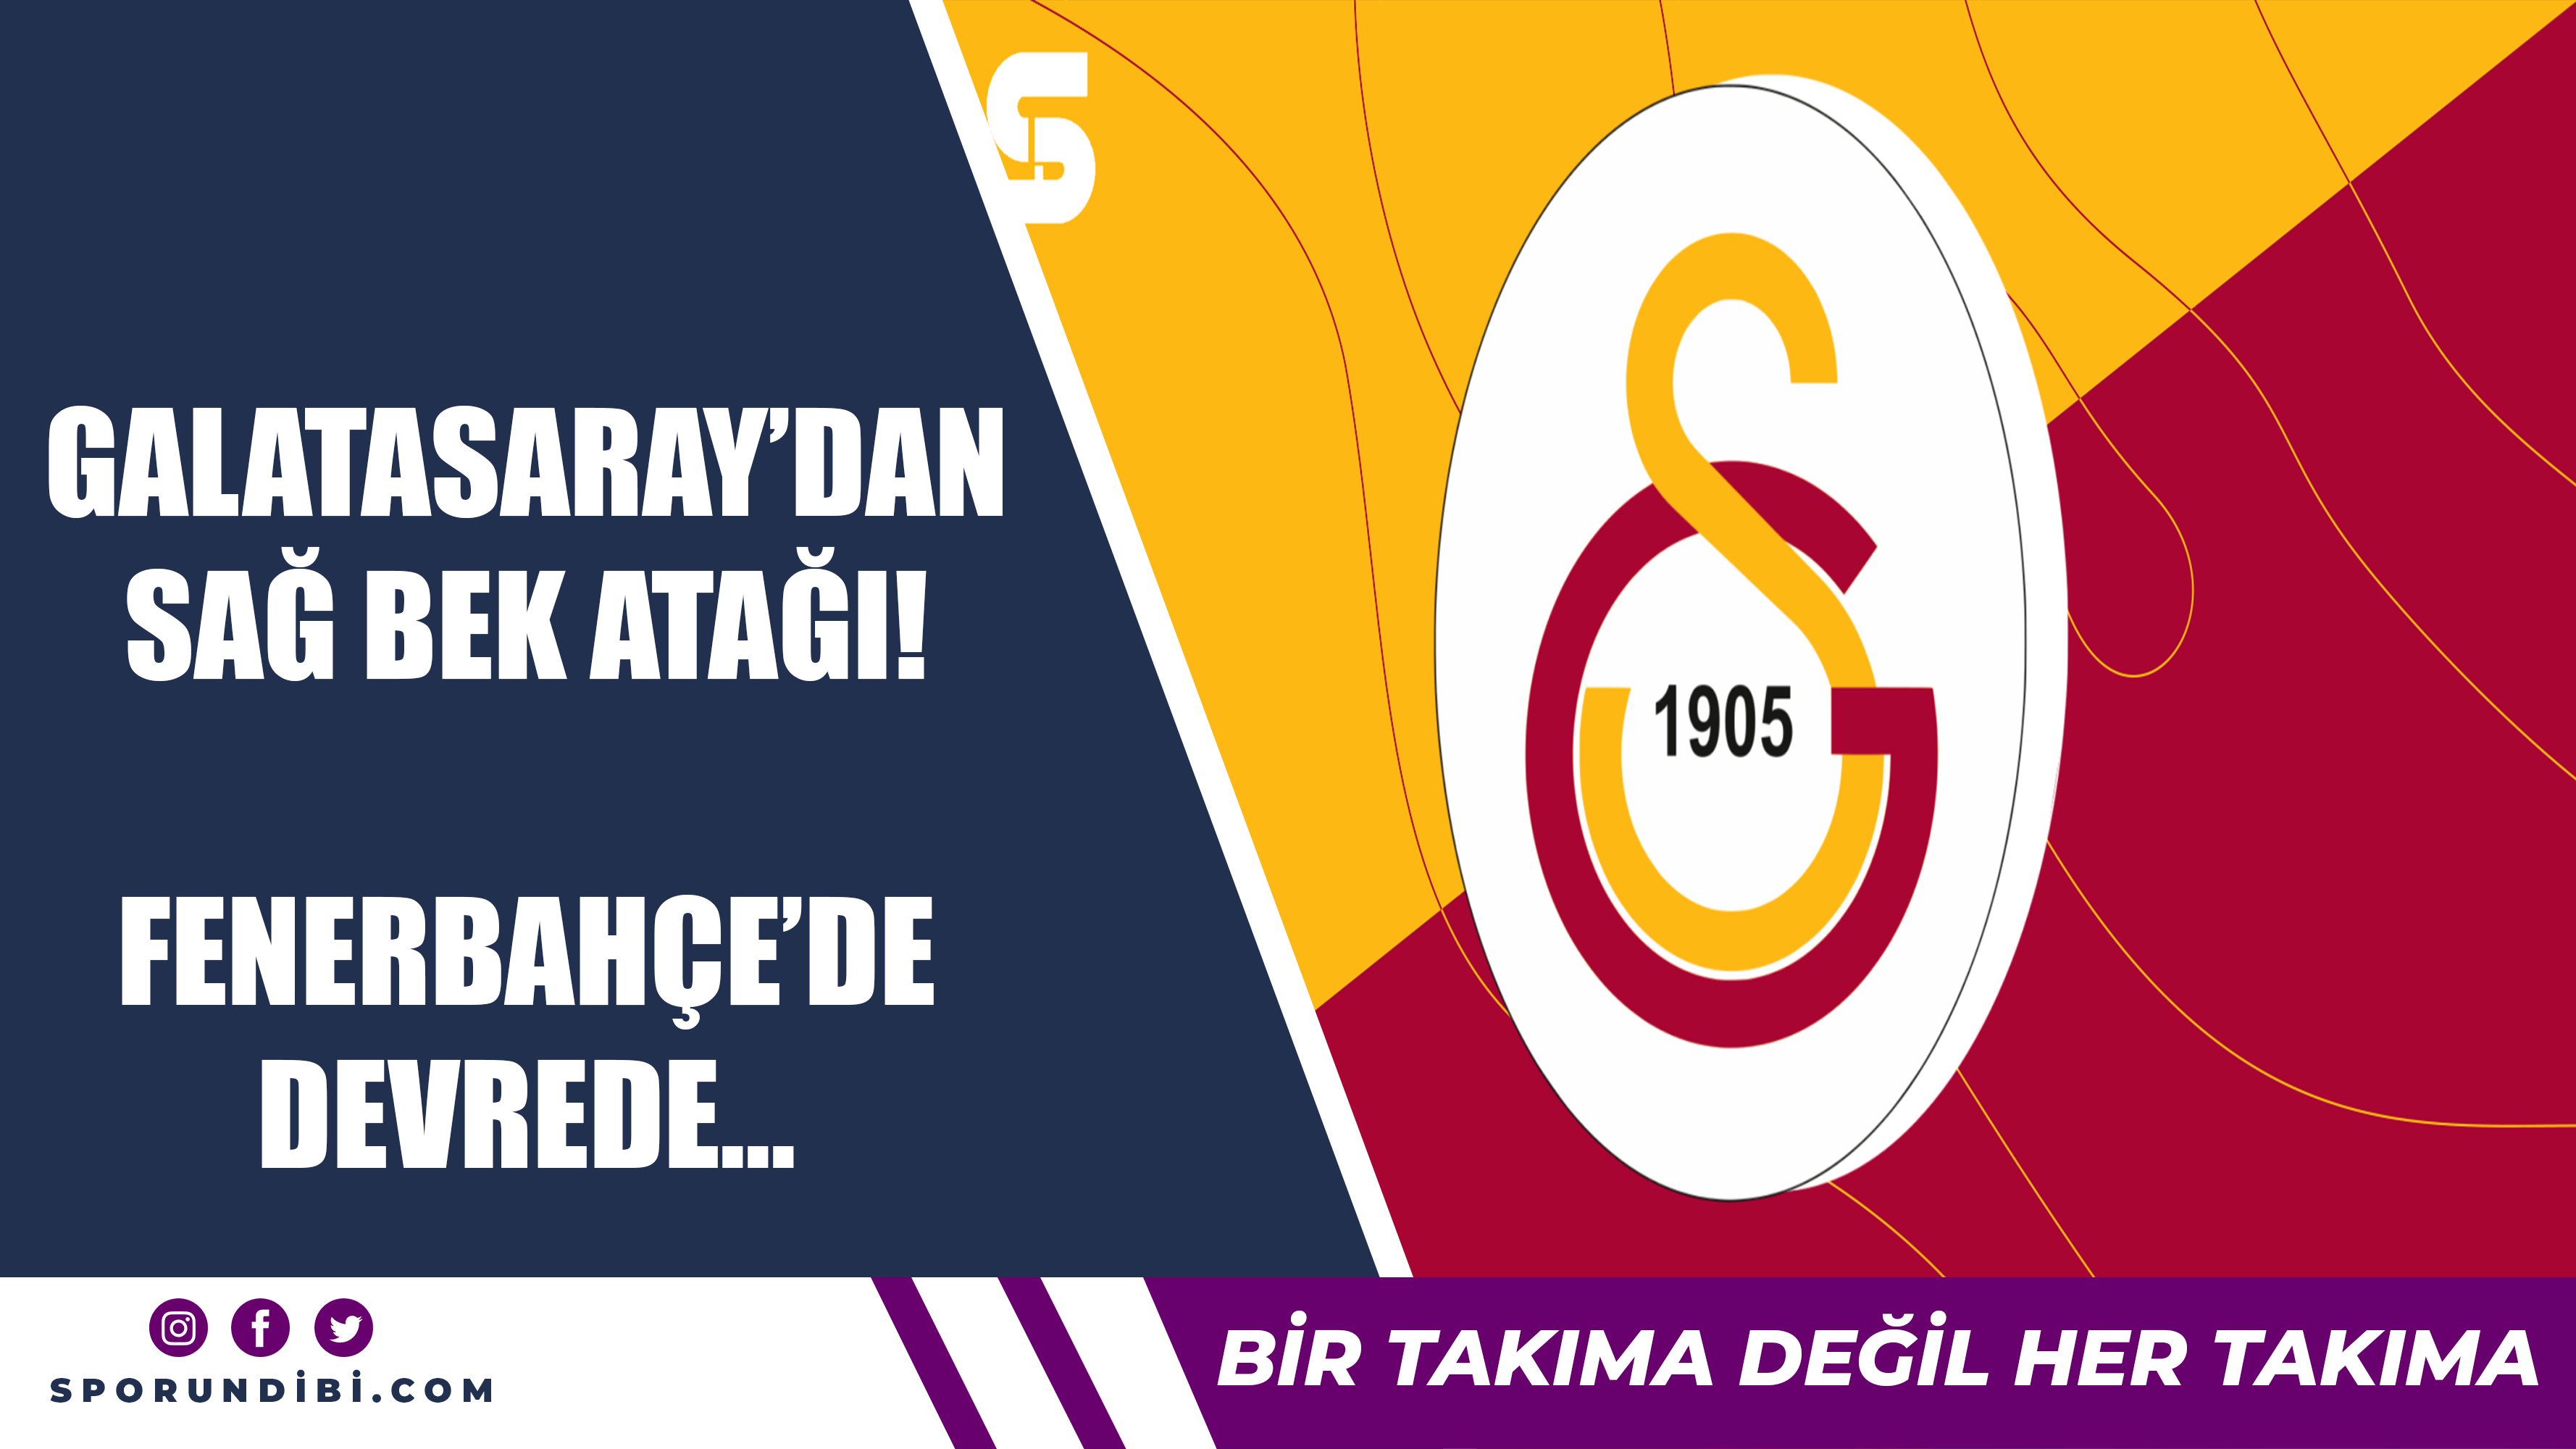 Galatasaray'dan sağ bek atağı! Fenerbahçe'de devrede...